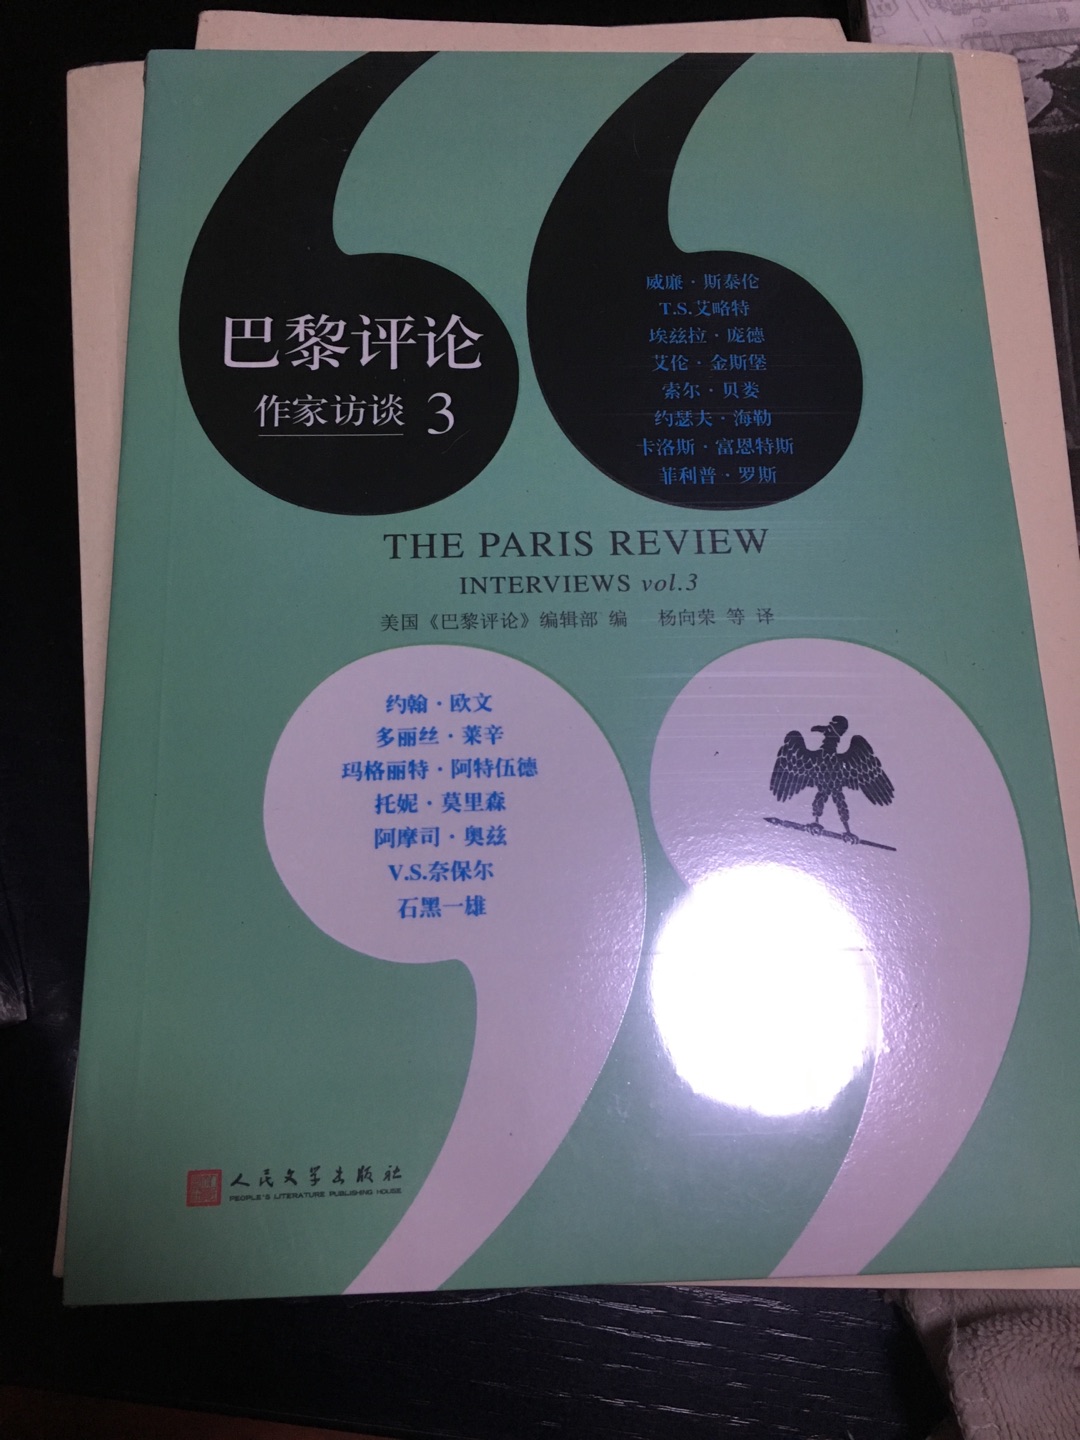 《巴黎评论》是对著名作家的访谈录，这些访谈精彩纷呈，令人惊叹，不可或缺......！对文学爱好者来说是经典作品。